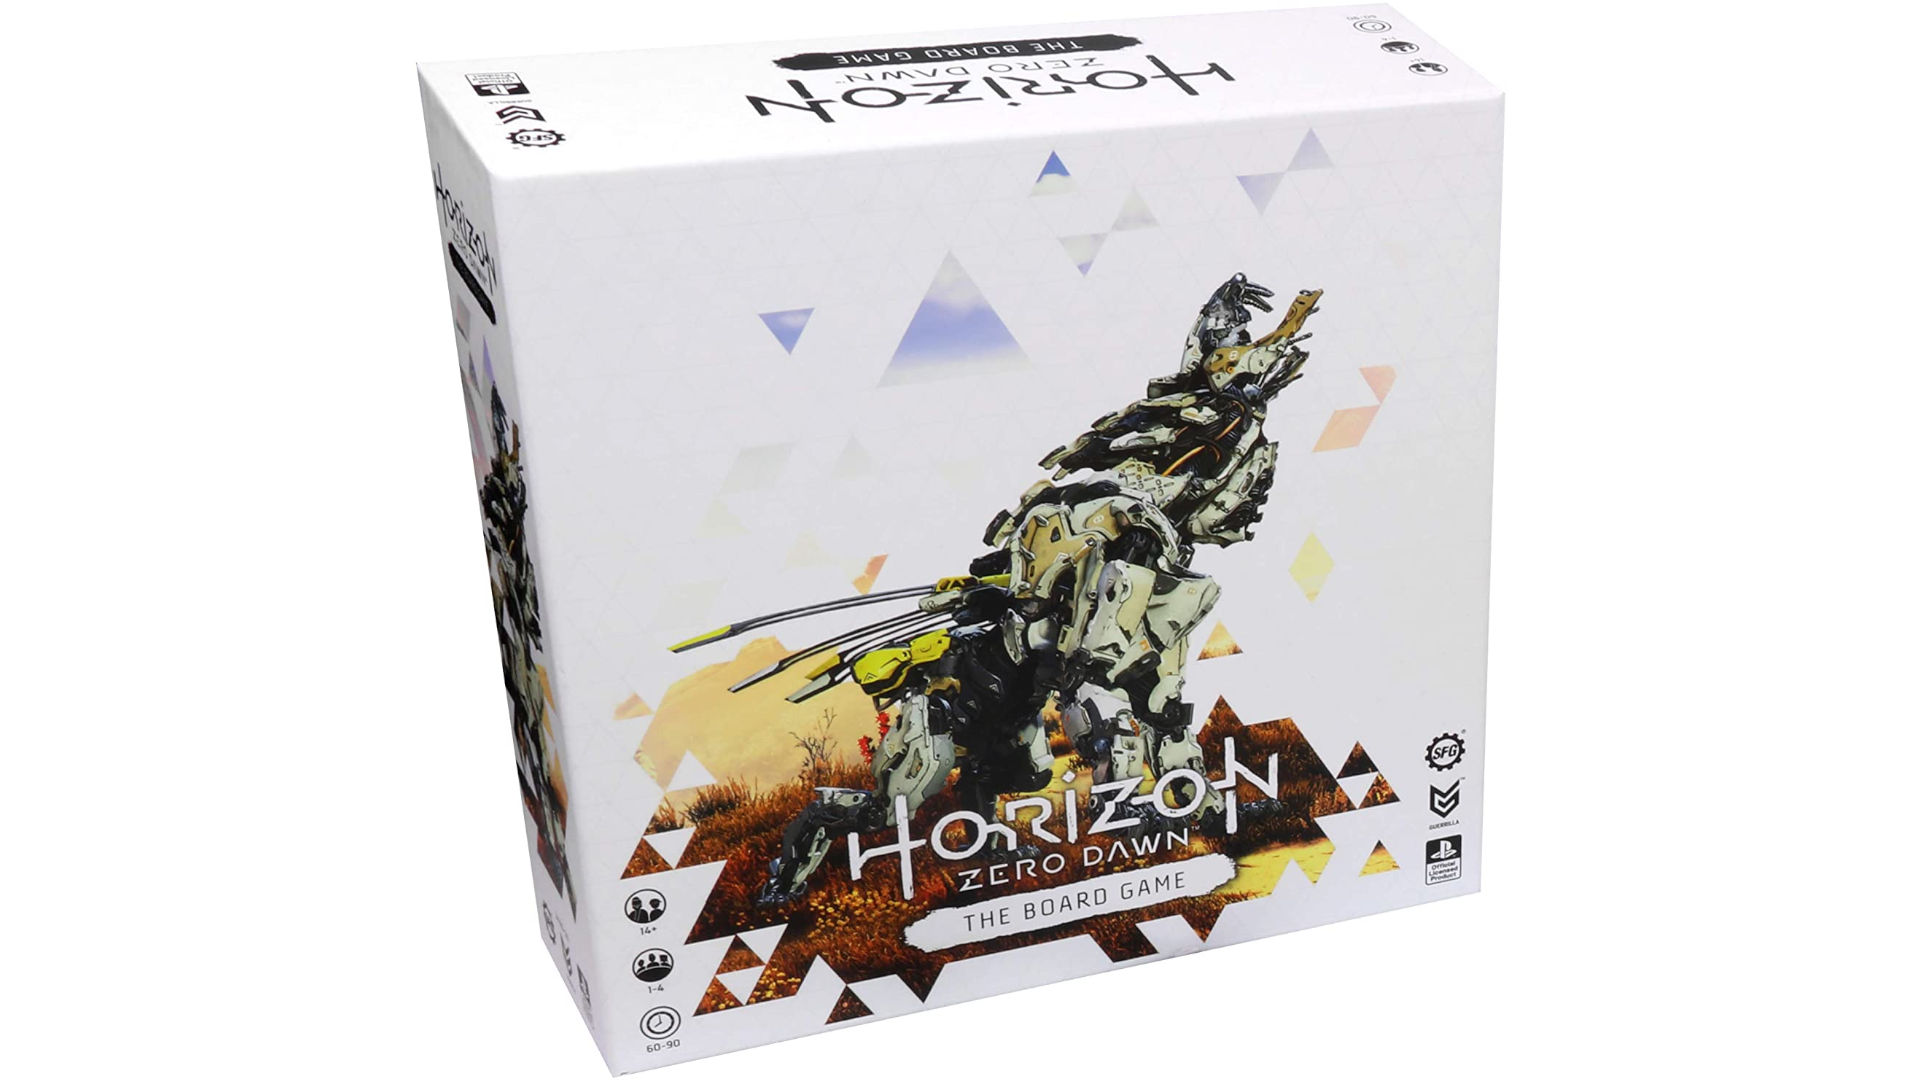 Box art of the Horizon Zero Dawn board game showing a Sawtooth roaring